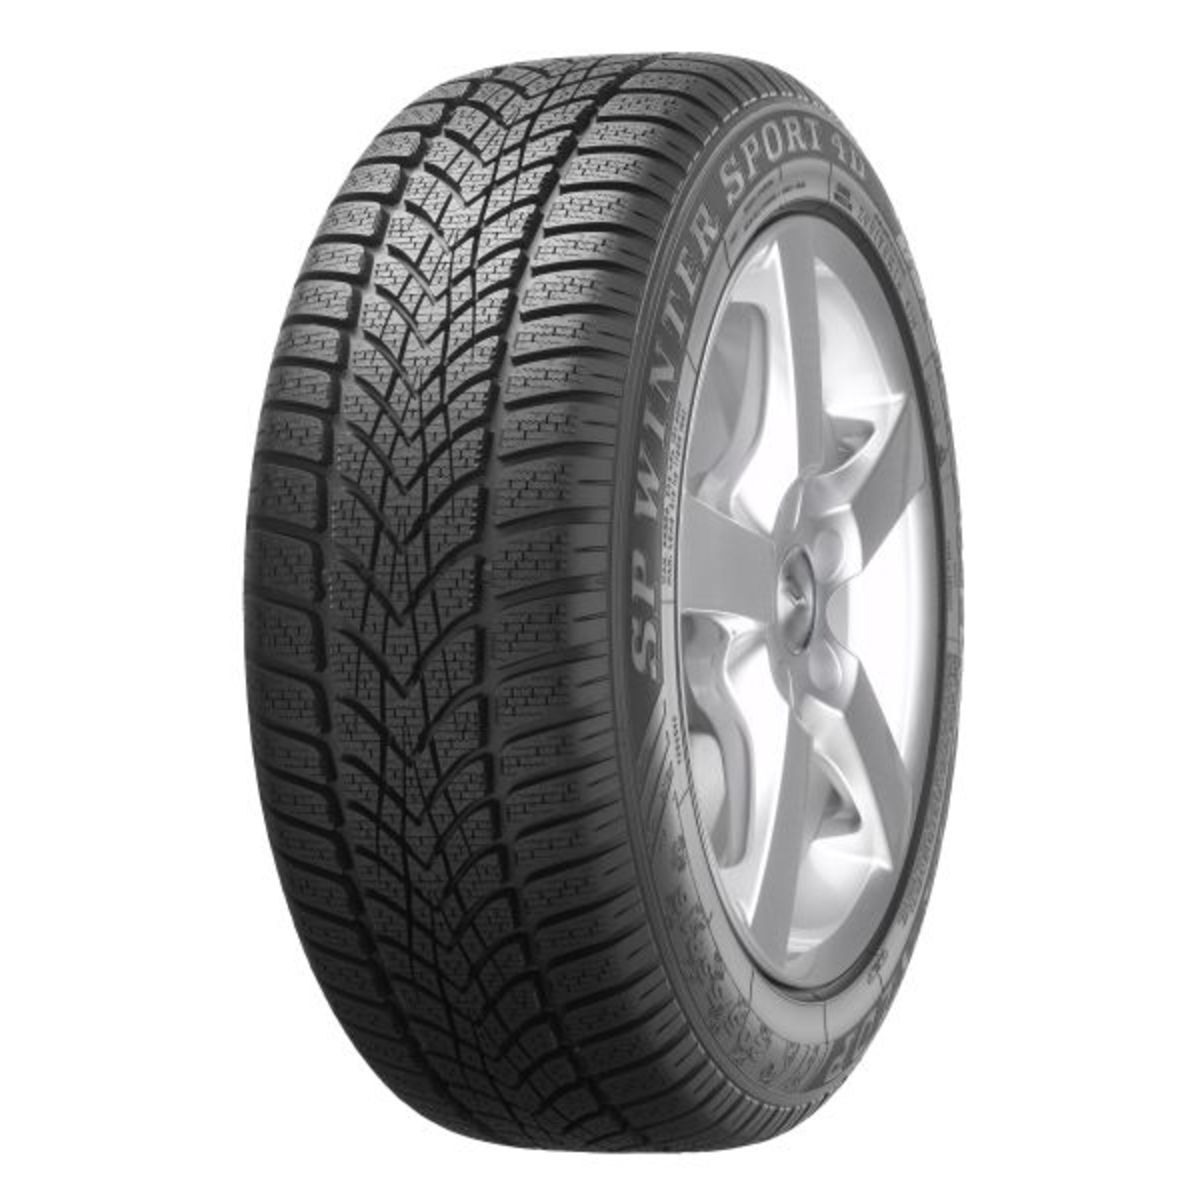 Neumáticos de invierno DUNLOP SP Winter Sport 4D 255/40R18 XL 99V